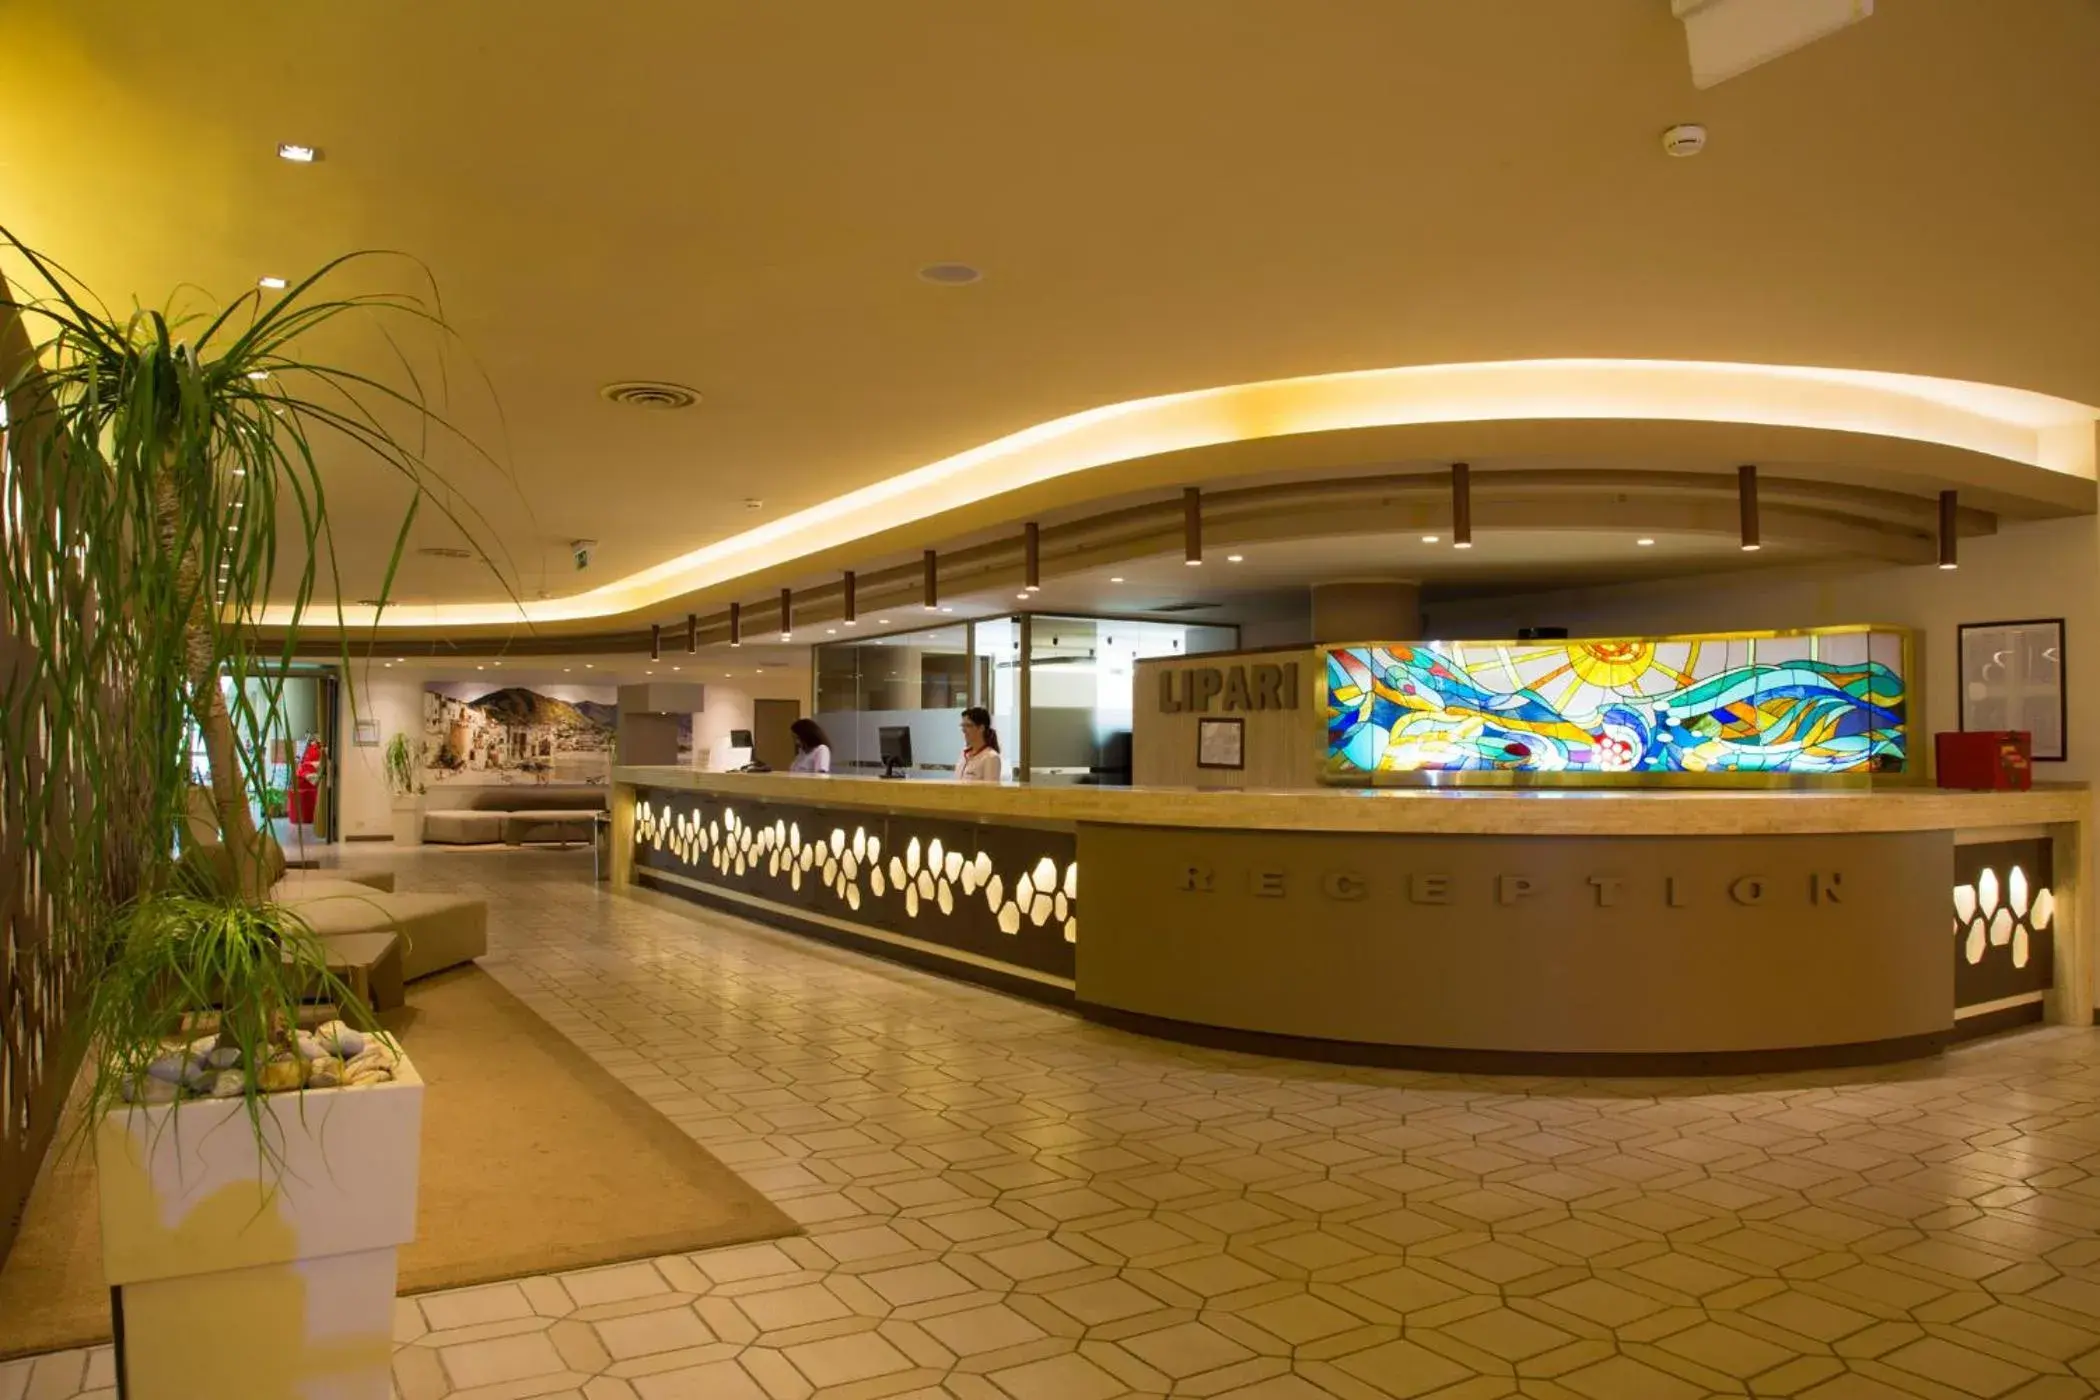 Lobby or reception, Lobby/Reception in MClub Lipari